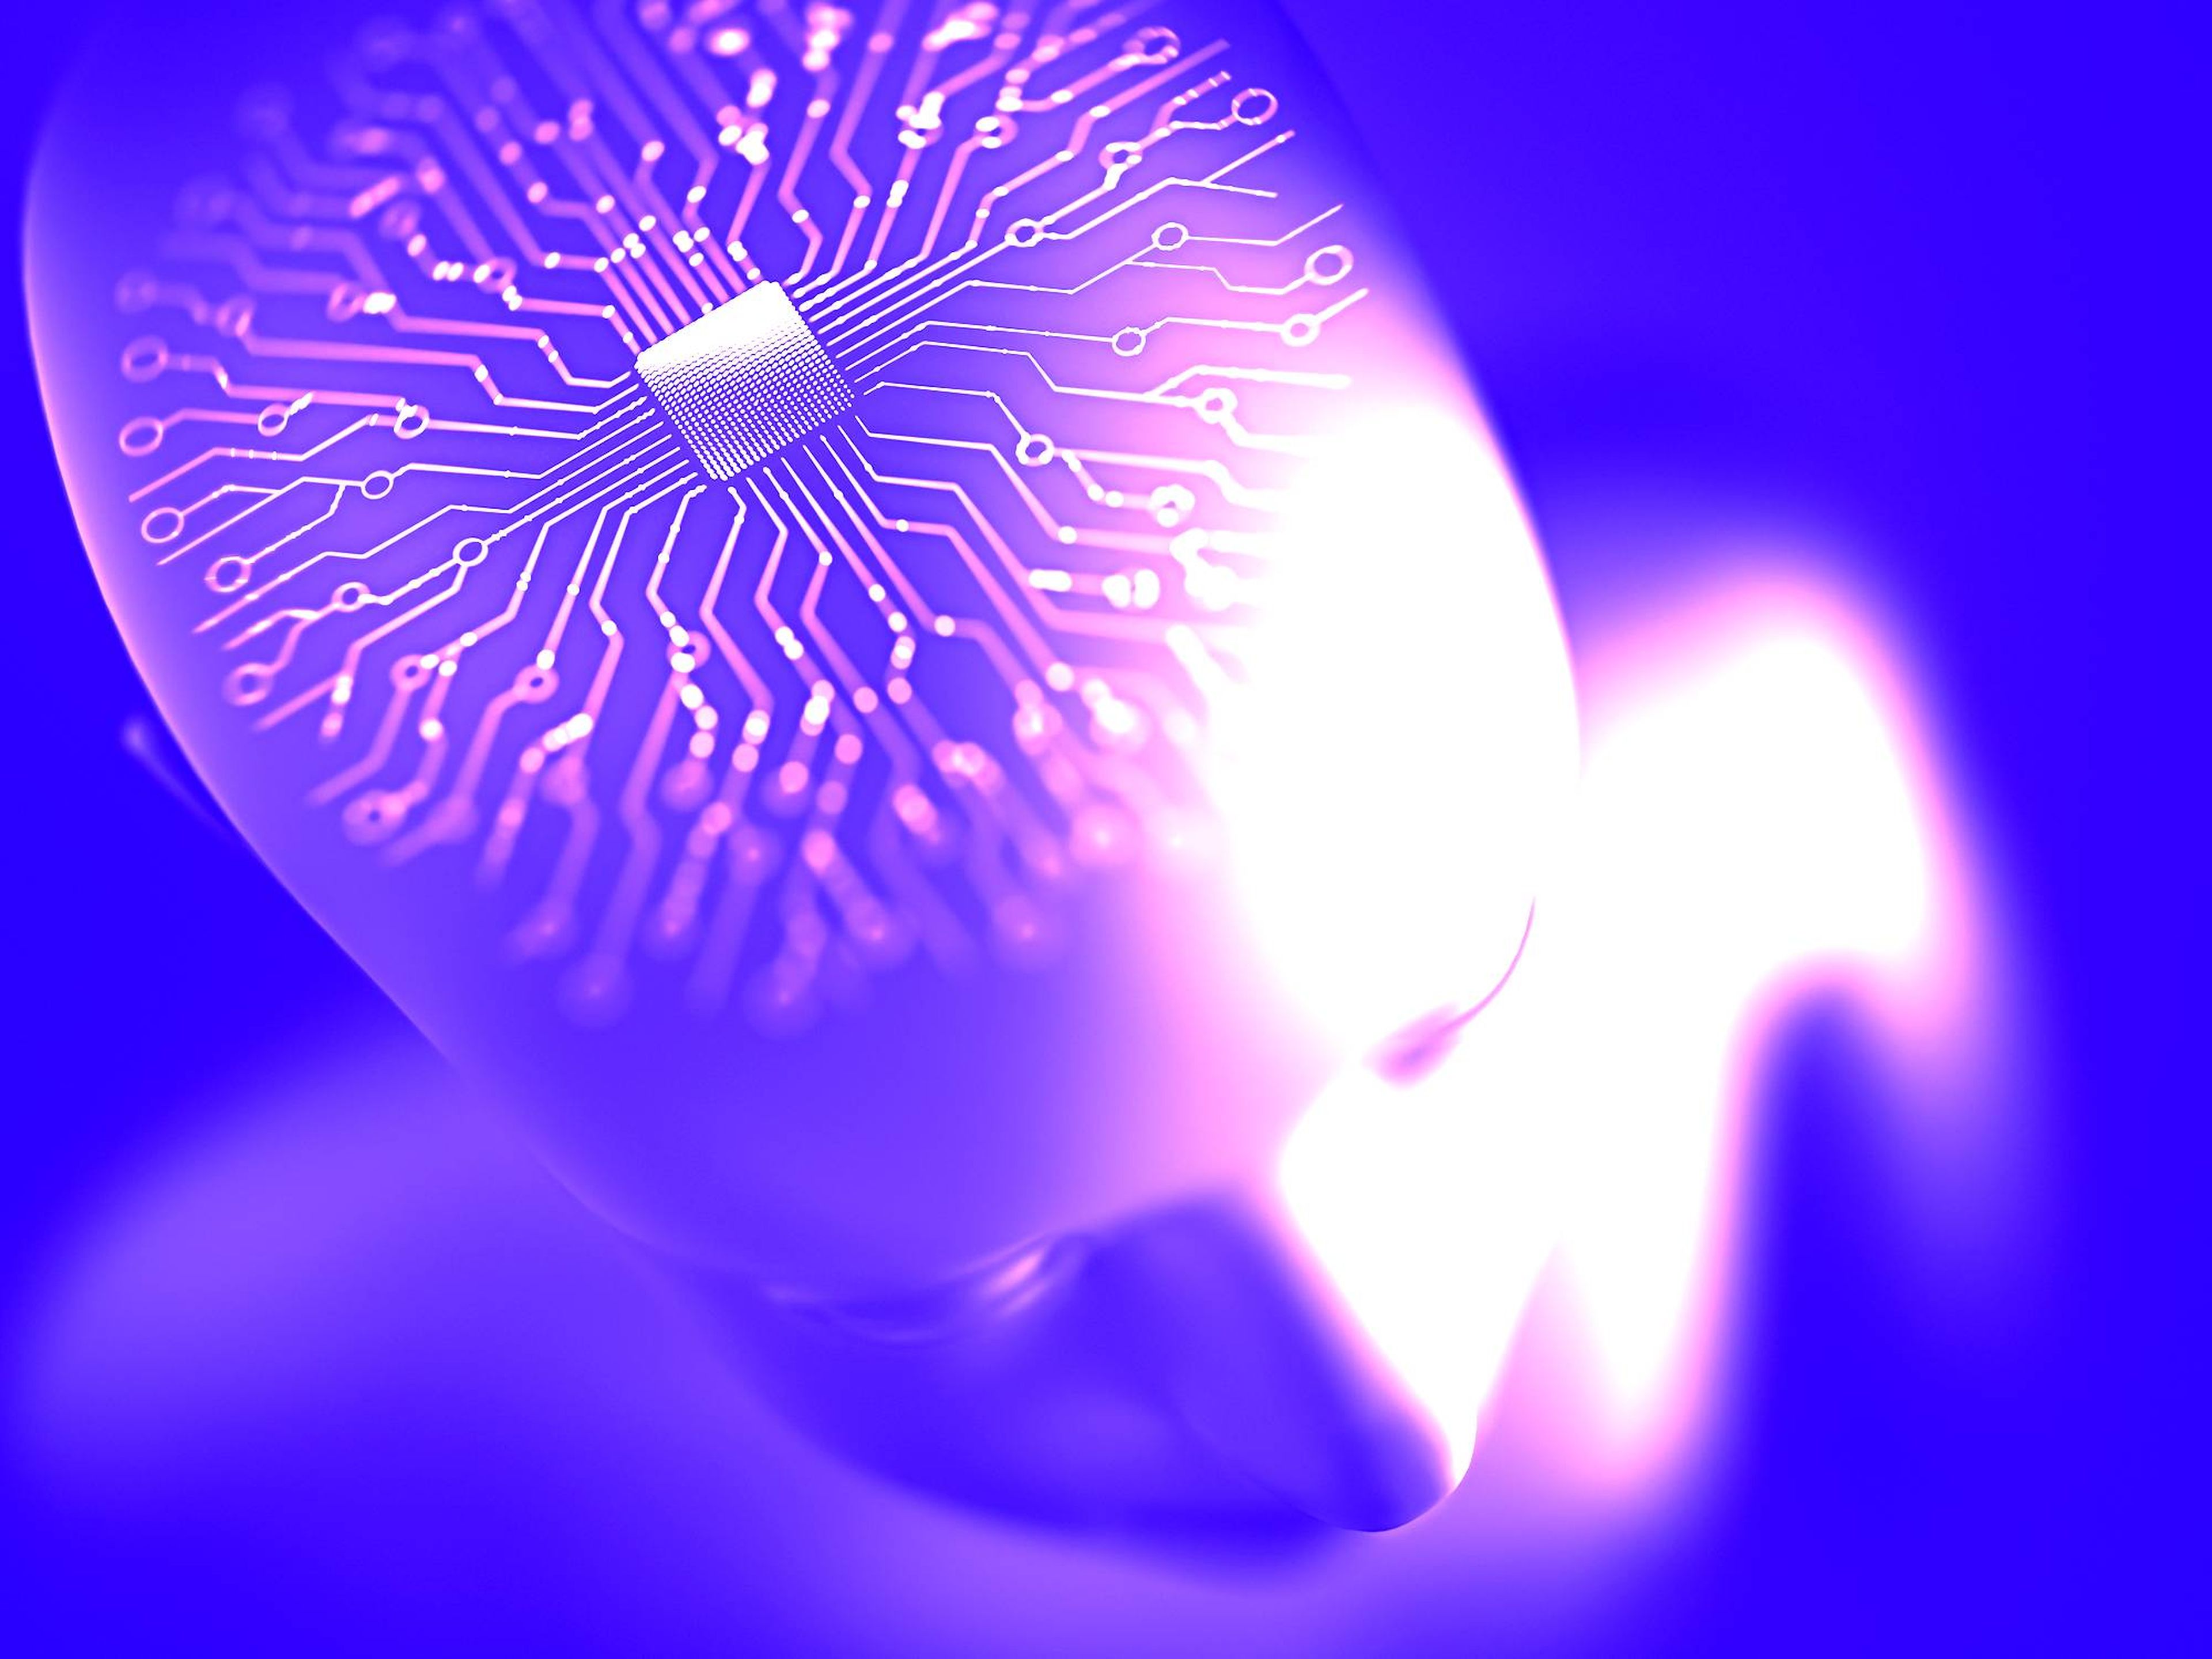 Noland Arbaugh recibió el implante de chip cerebral de Neuralink en enero.